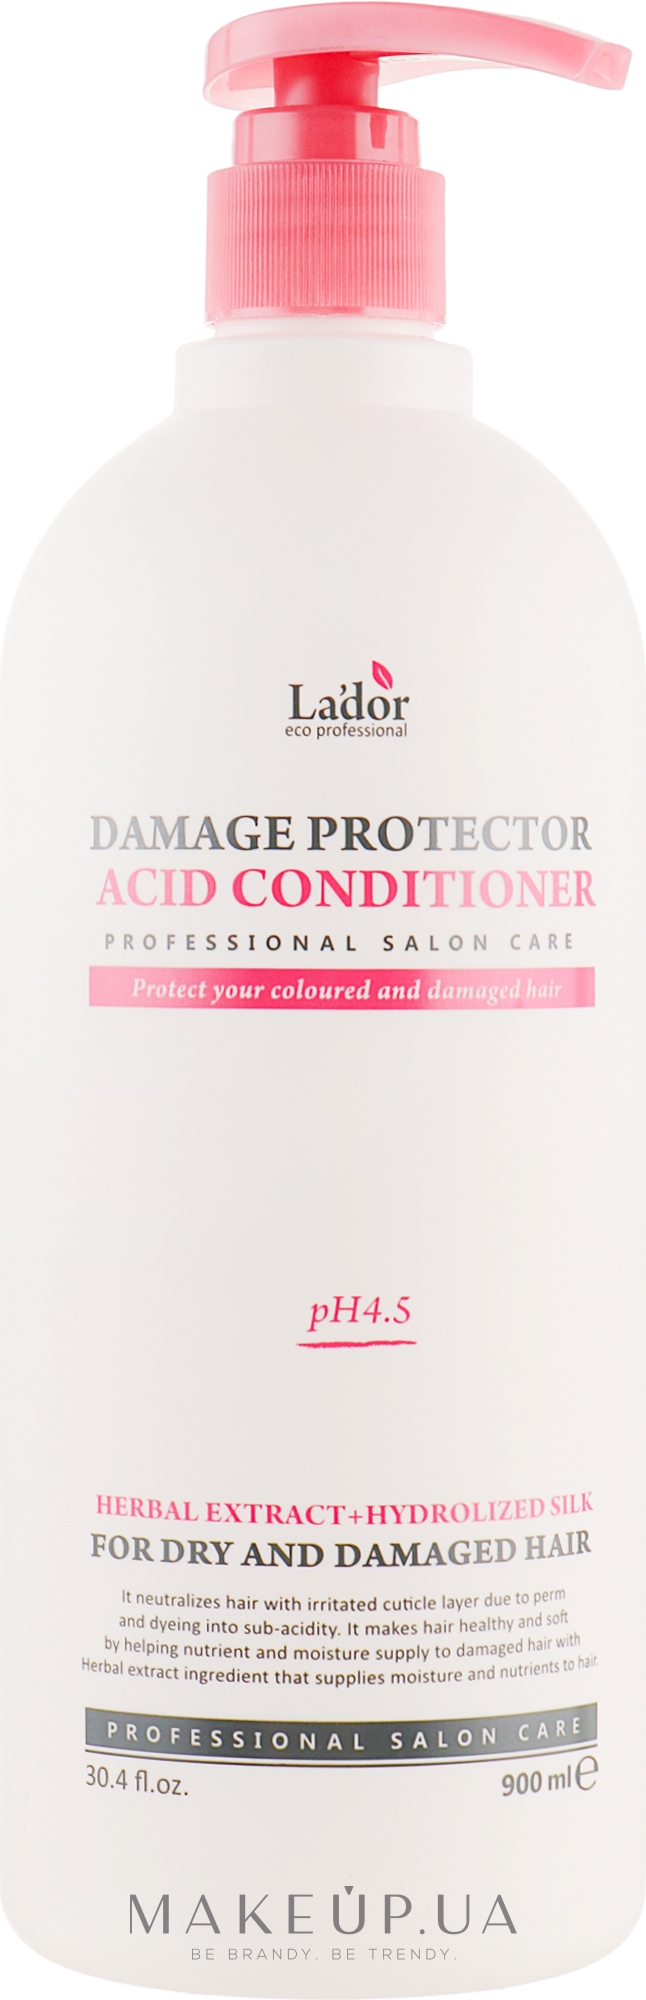 Кондиционер для сухих волос - La'dor Damaged Protector Acid Conditioner — фото 900ml